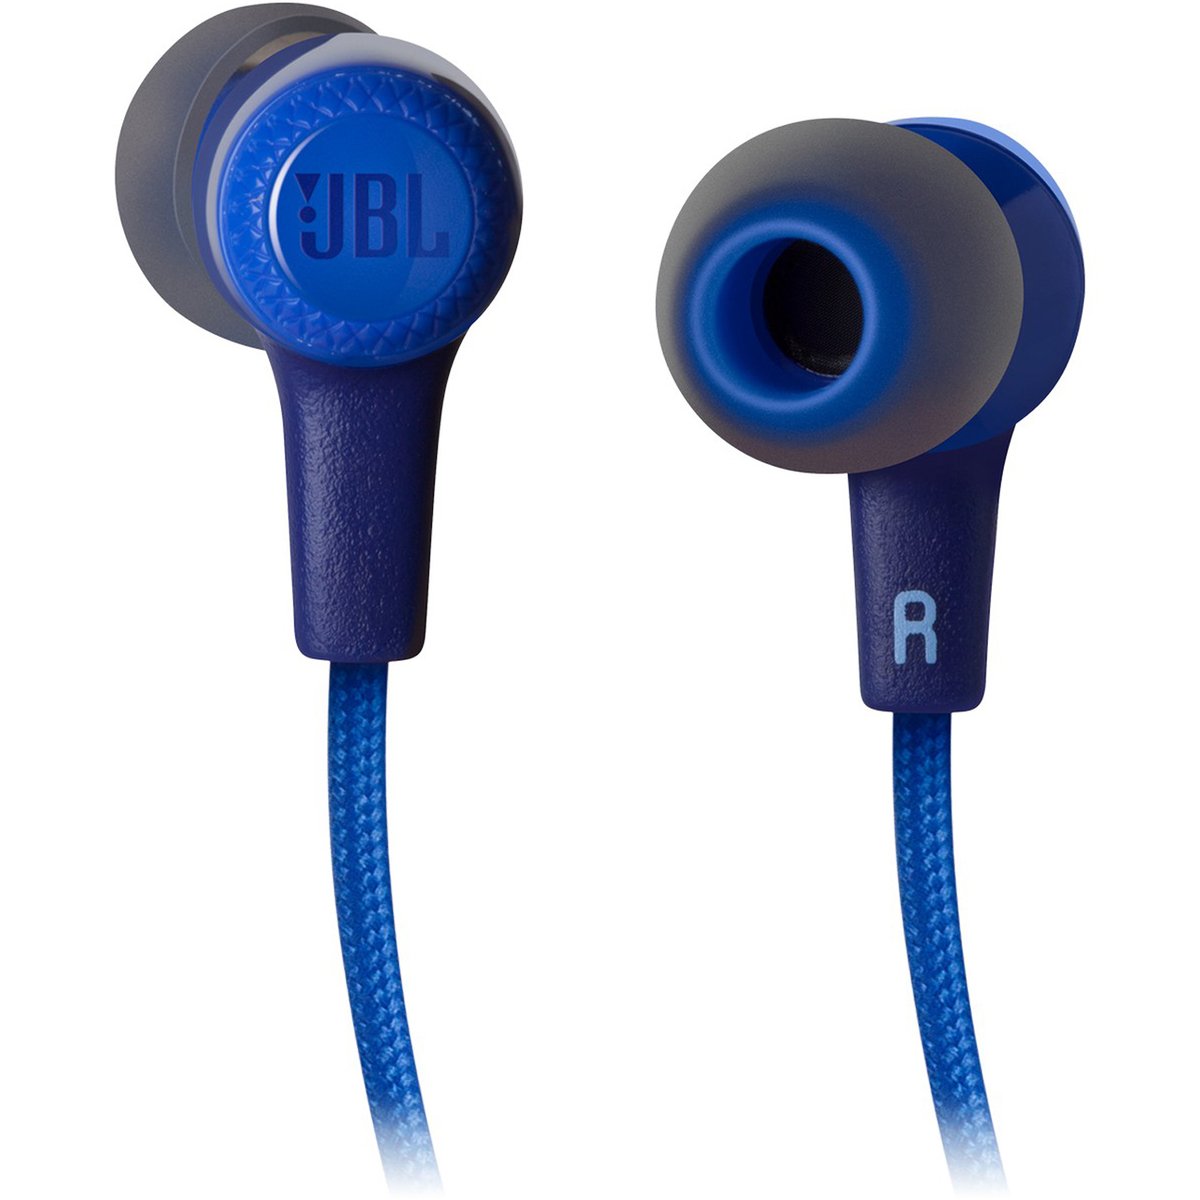 JBL Wireless in-ear Headphones E25BT Blue